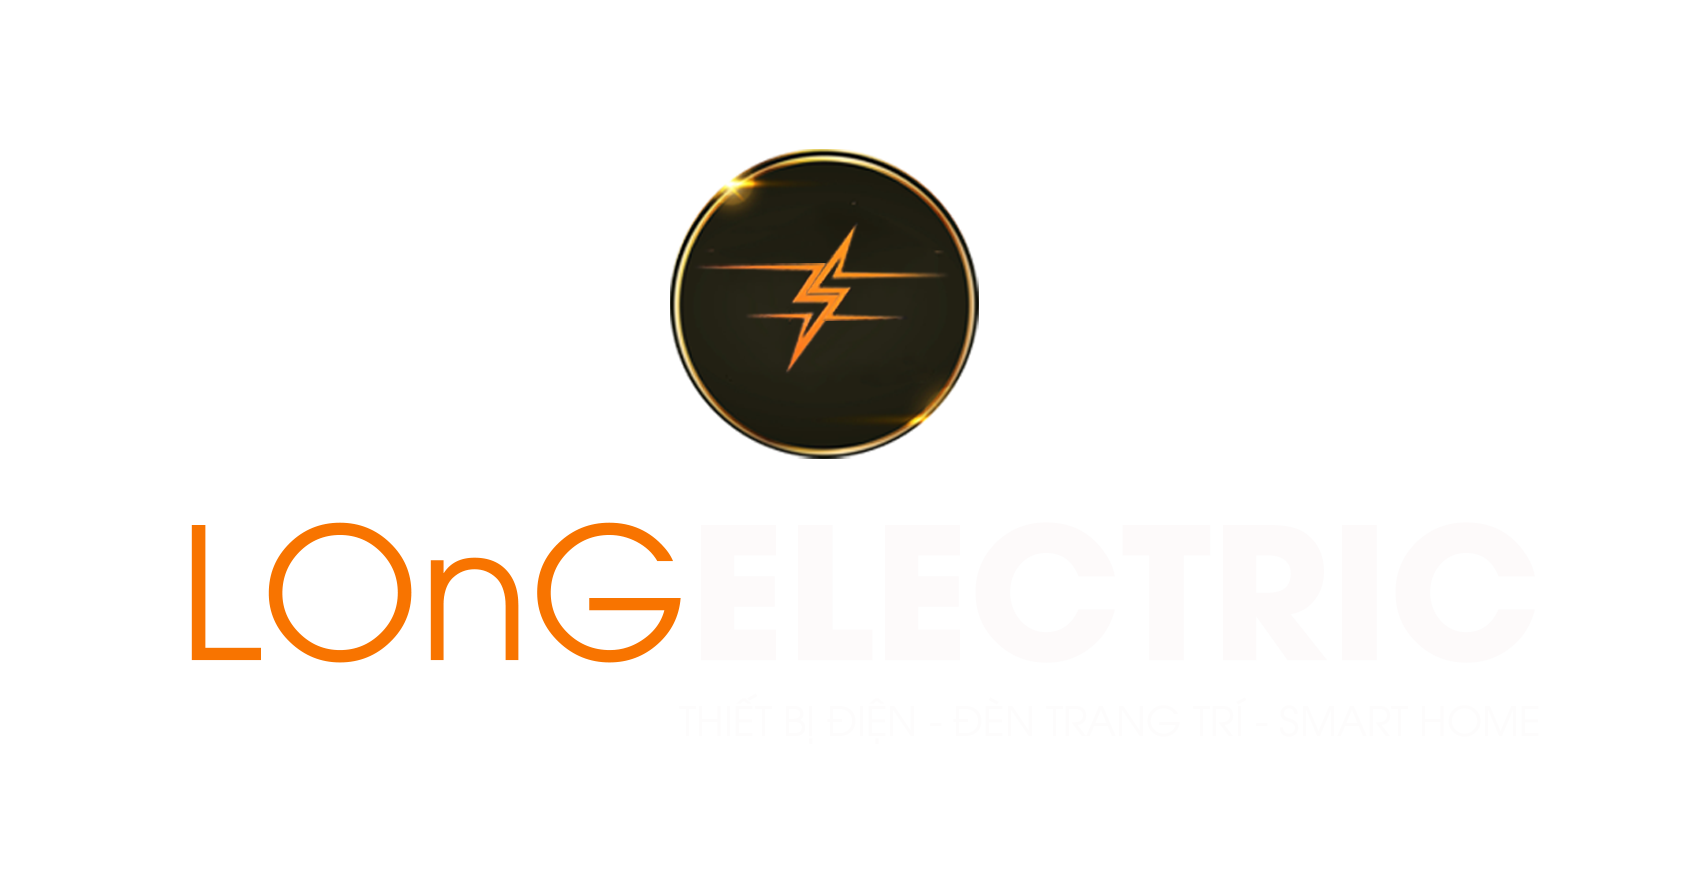 Long Electric - Thiết Bị Điện - Đèn Trang Trí - Smarthouse 